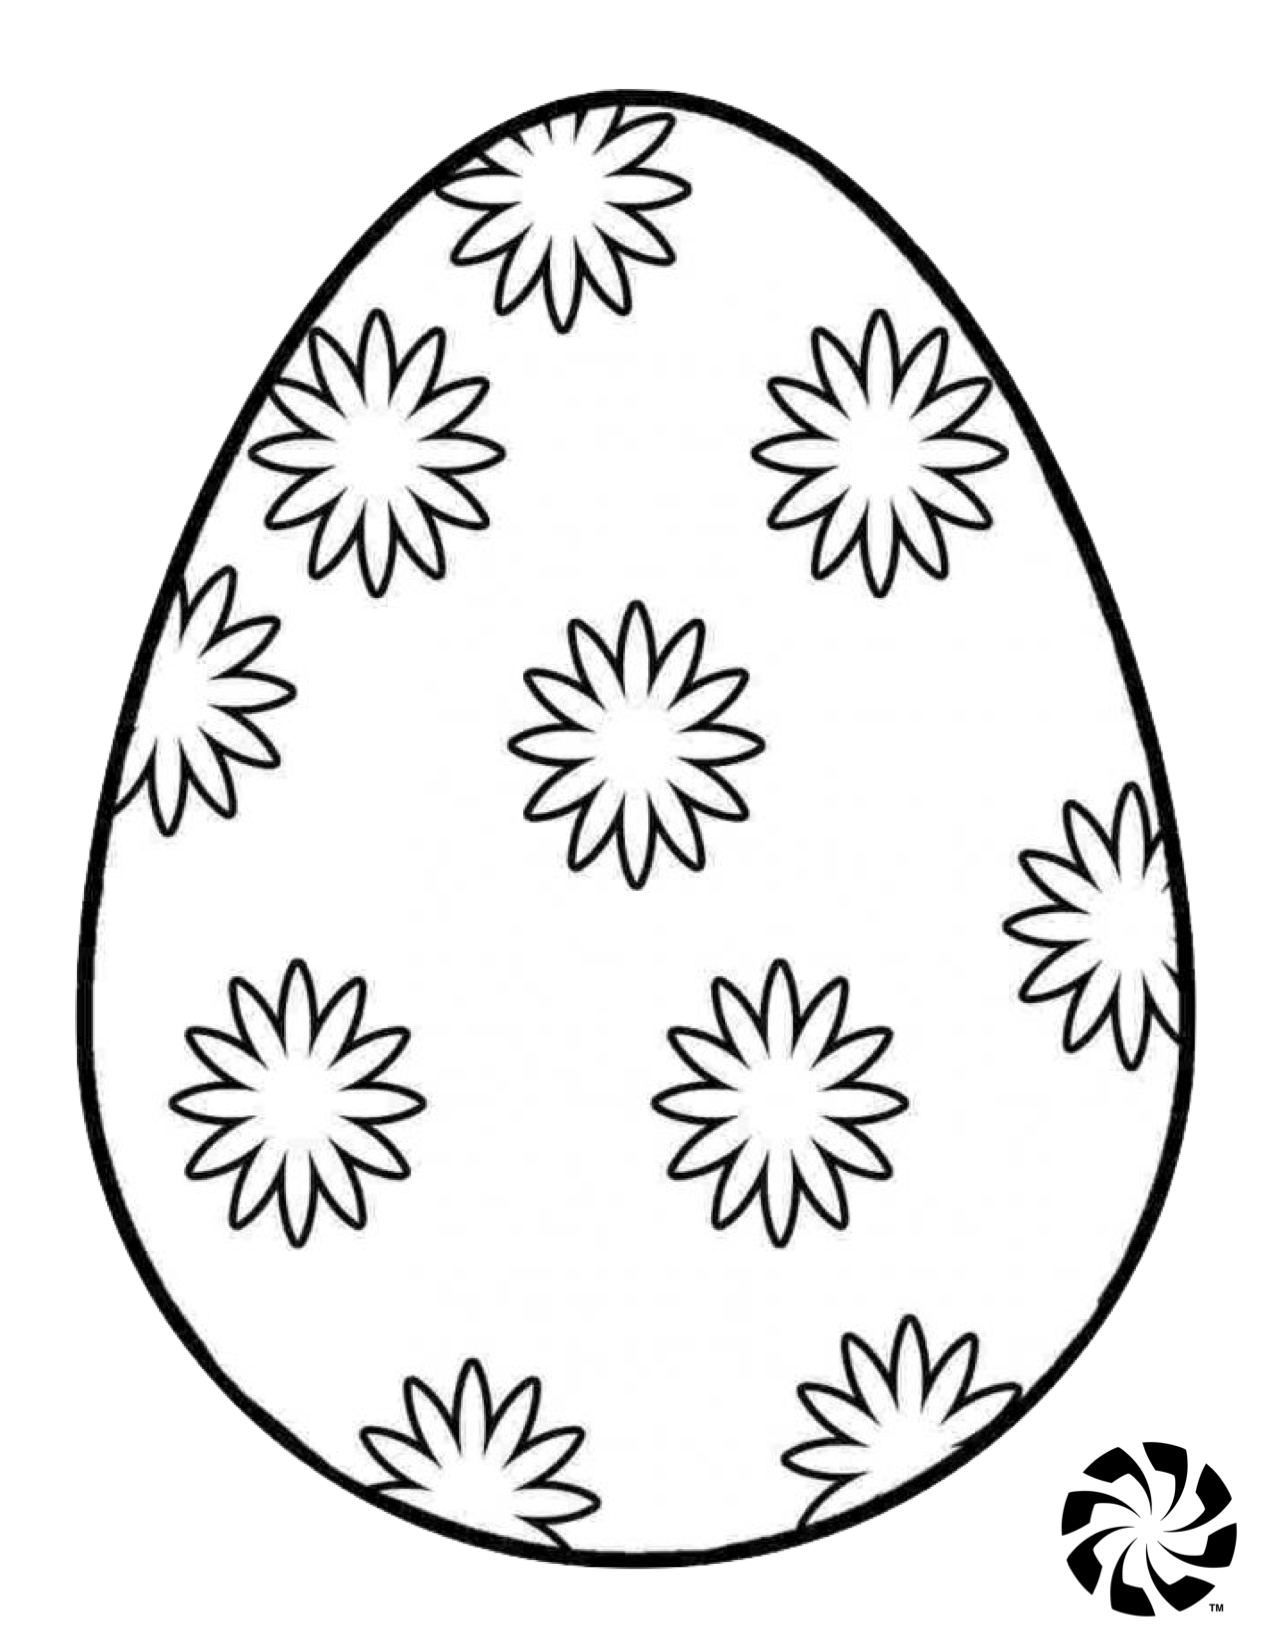 Яйцо шаблон для детей. Пасхальное яйцо раскраска. Яйцо раскраска для детей. Пасхальное яйцо раскраска для детей. Трафареты пасхальных яиц для раскрашивания.